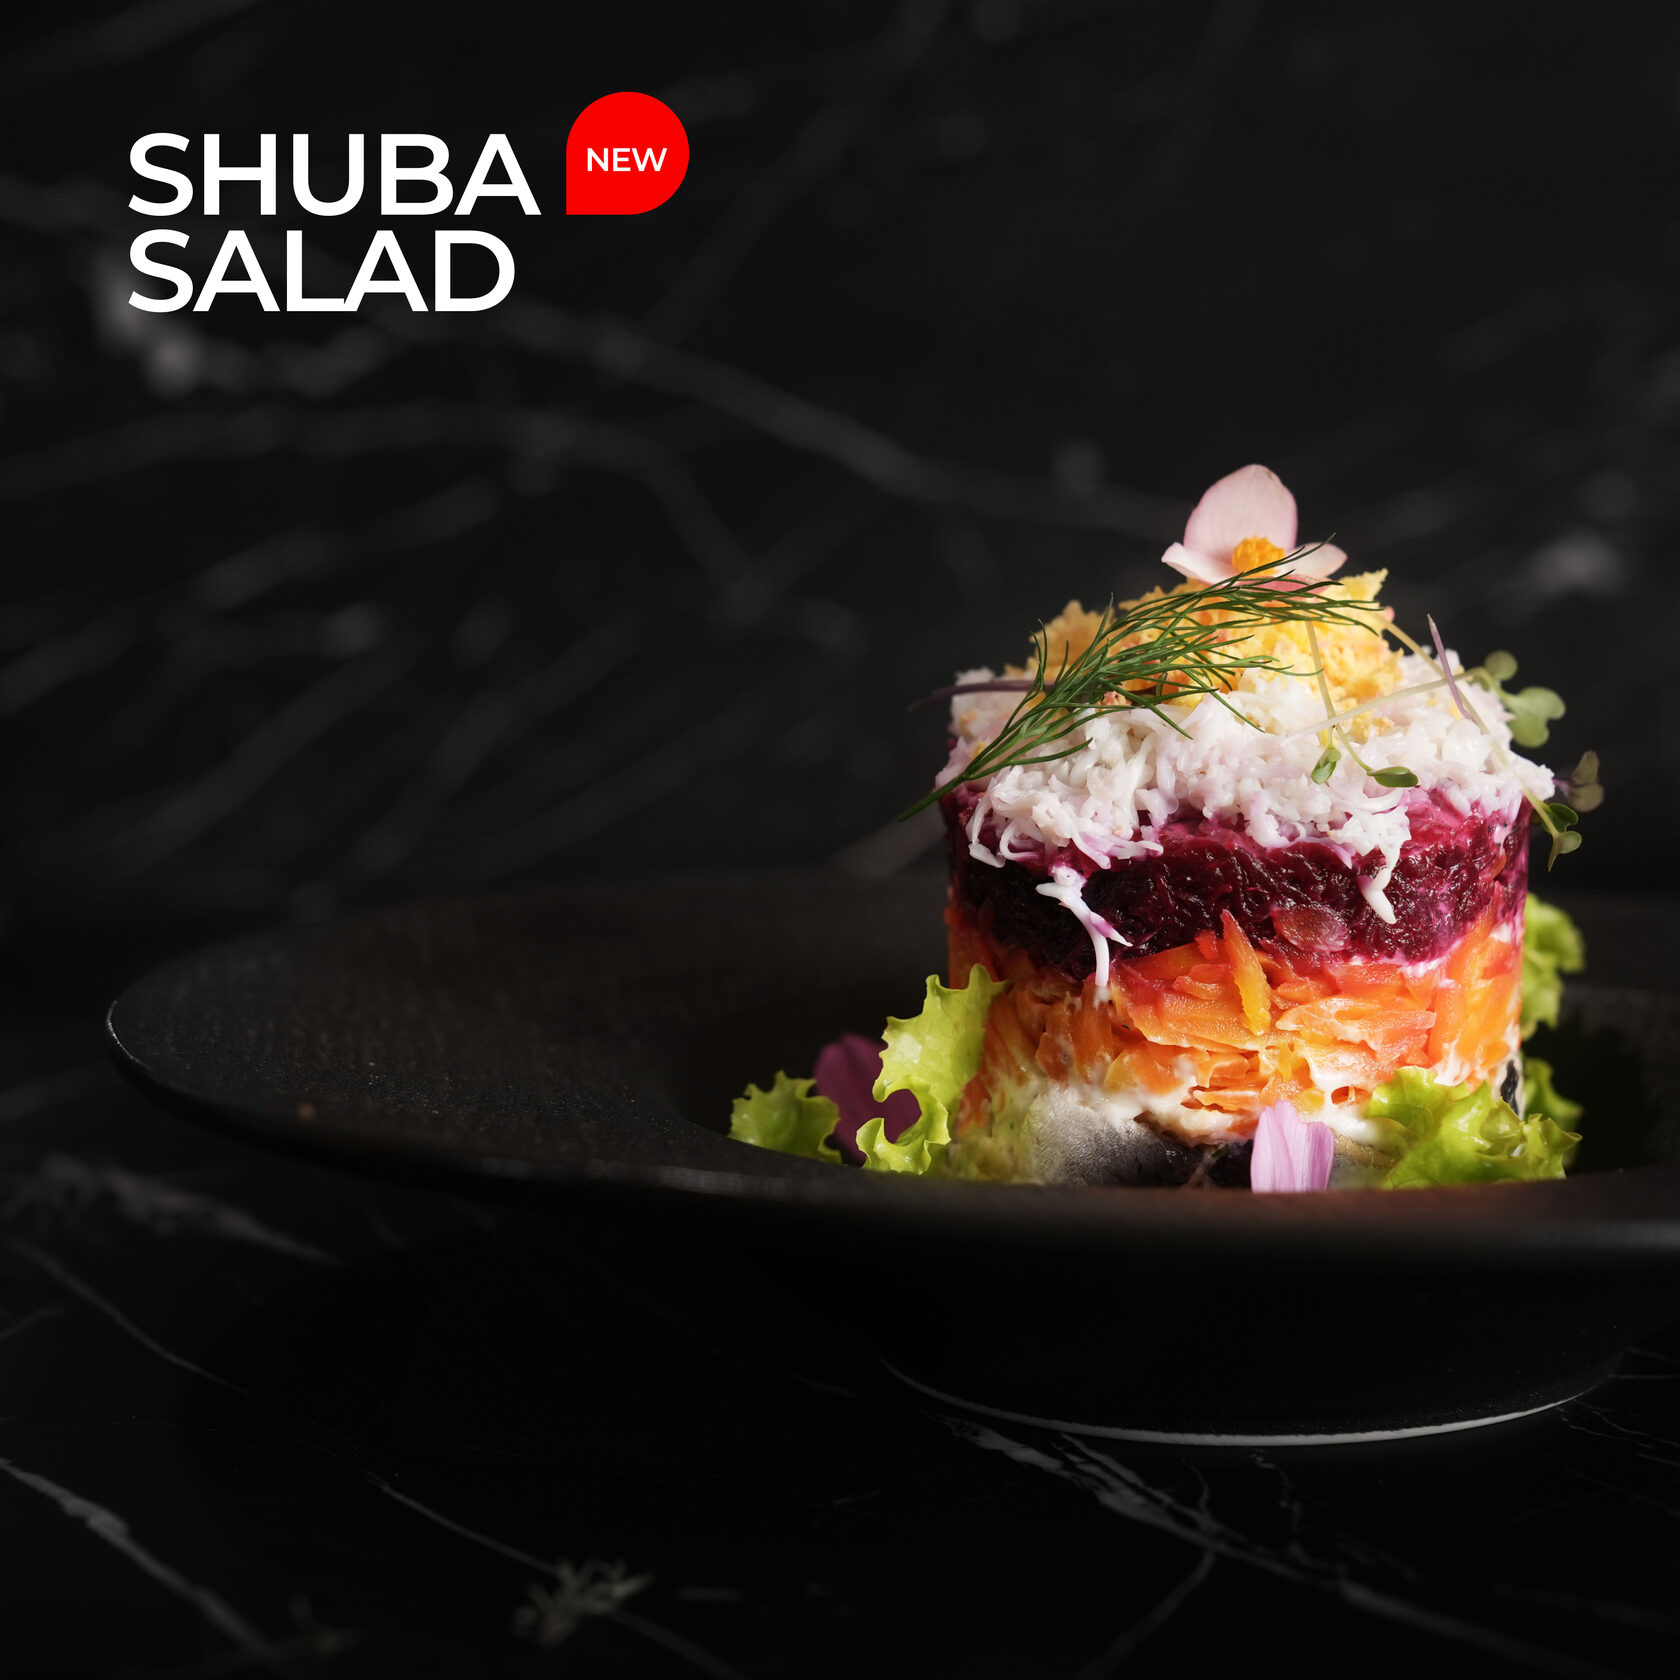 Shuba salad. Russian tradition